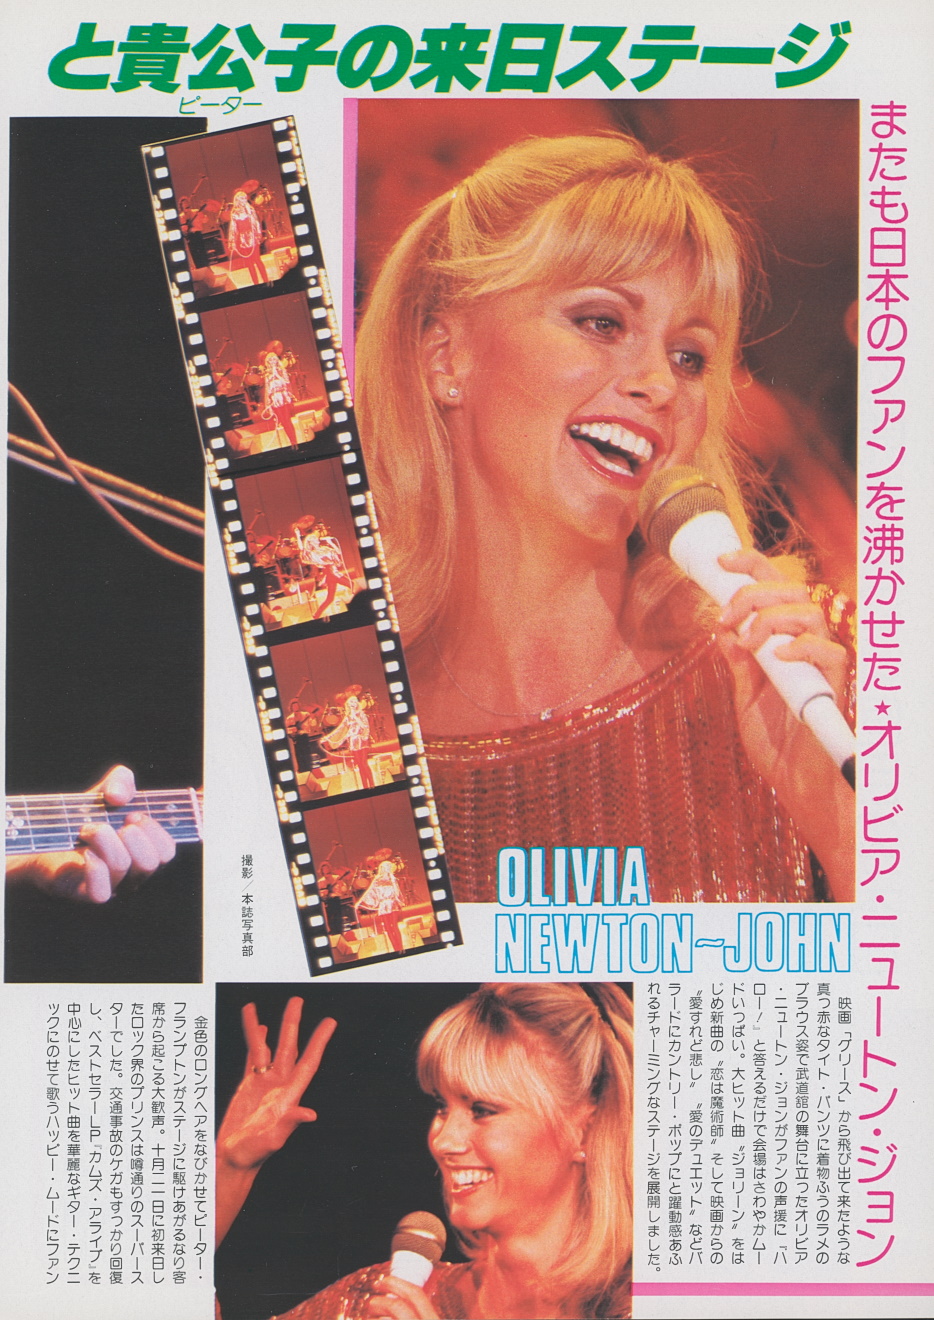 Olivia live - Japanese magazine